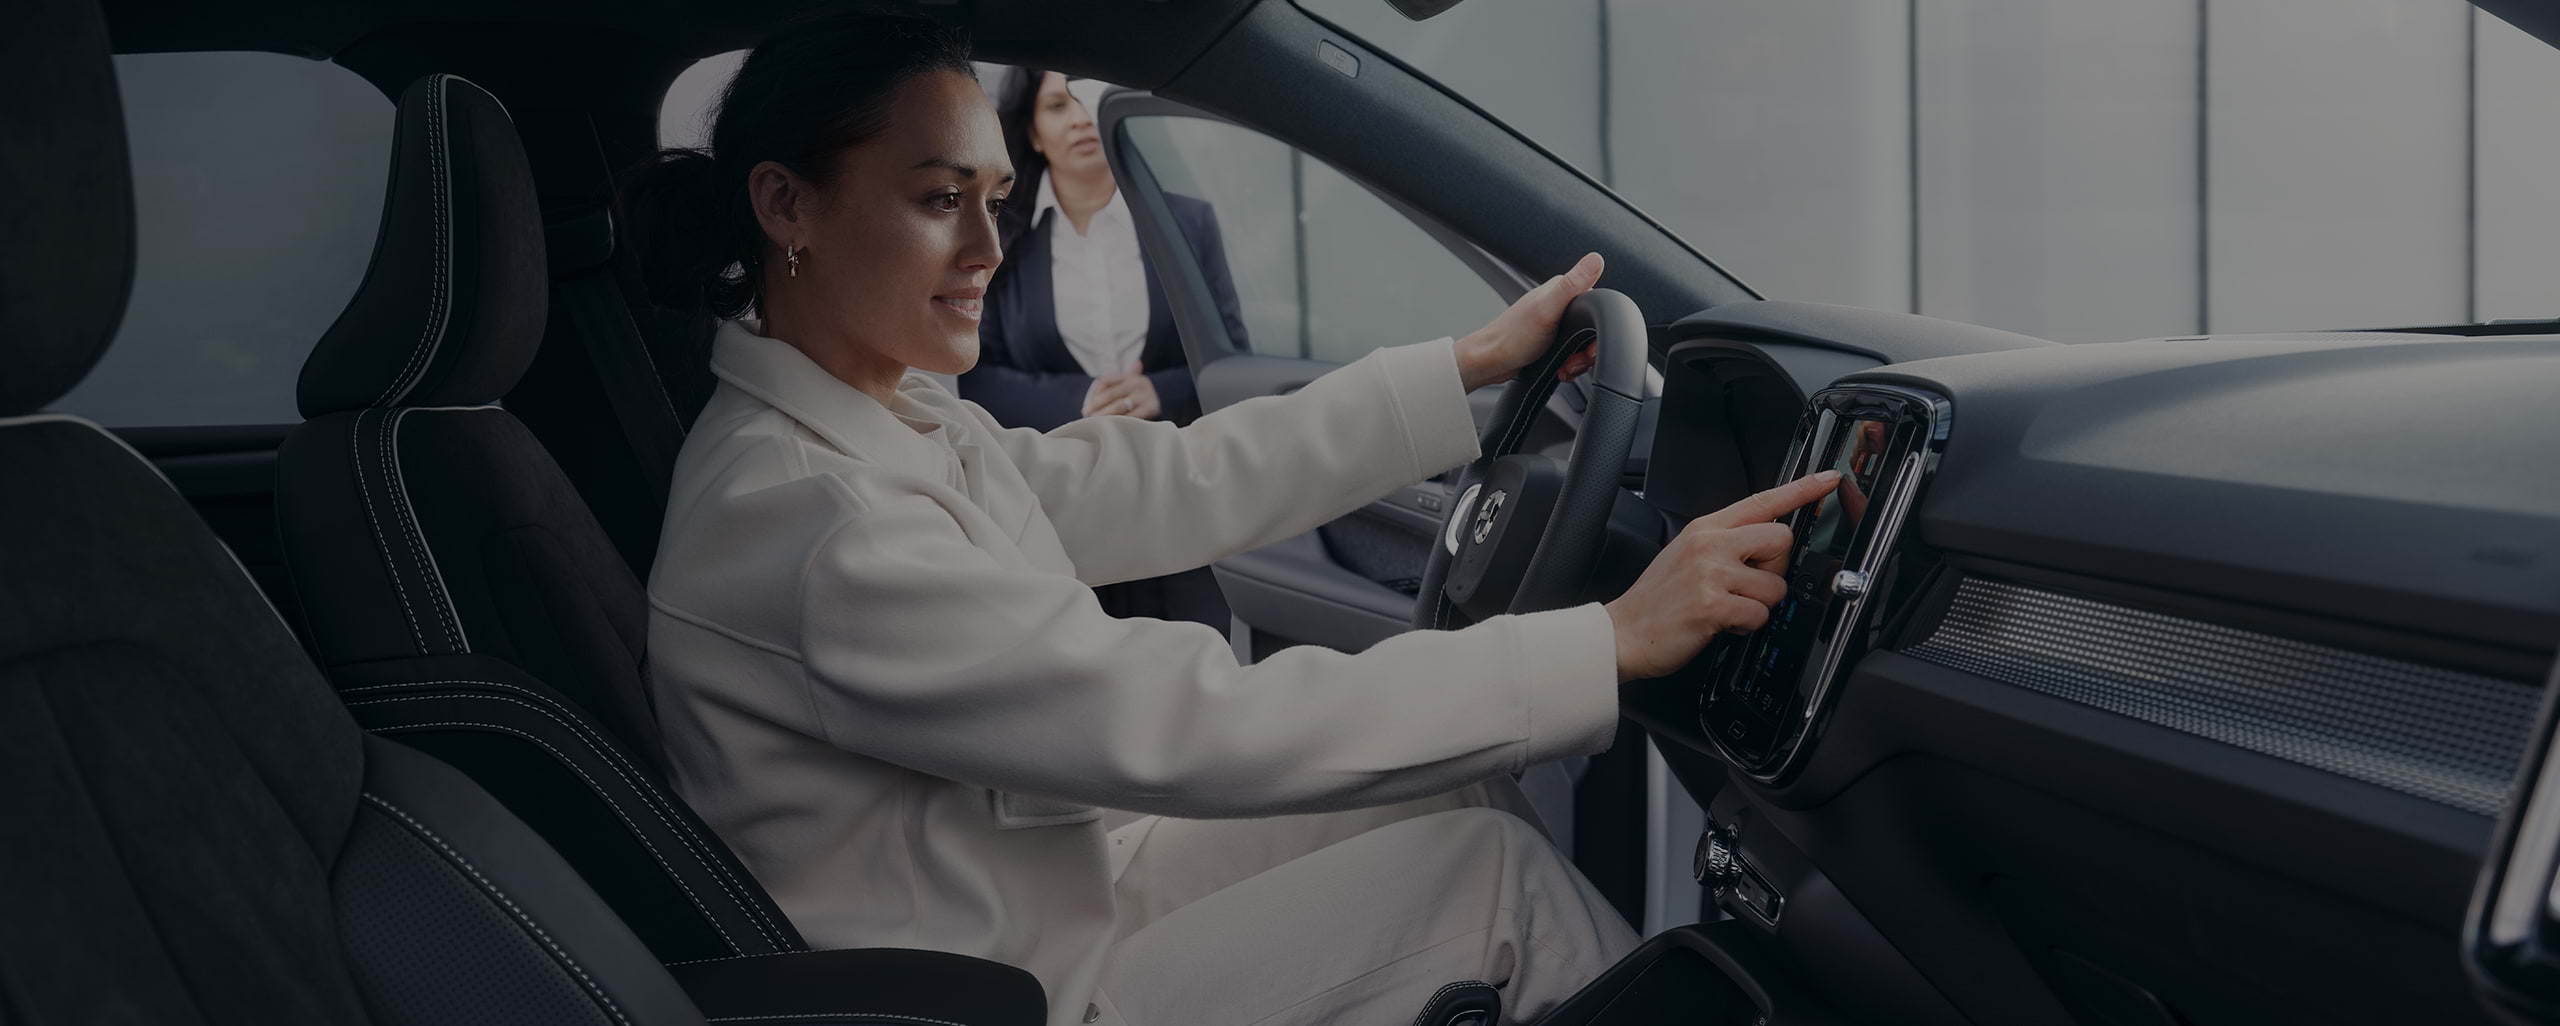 Pasada por alto por una vendedora, una joven se sienta sonriente en el asiento del conductor tocando la consola central de un vehículo Volvo.